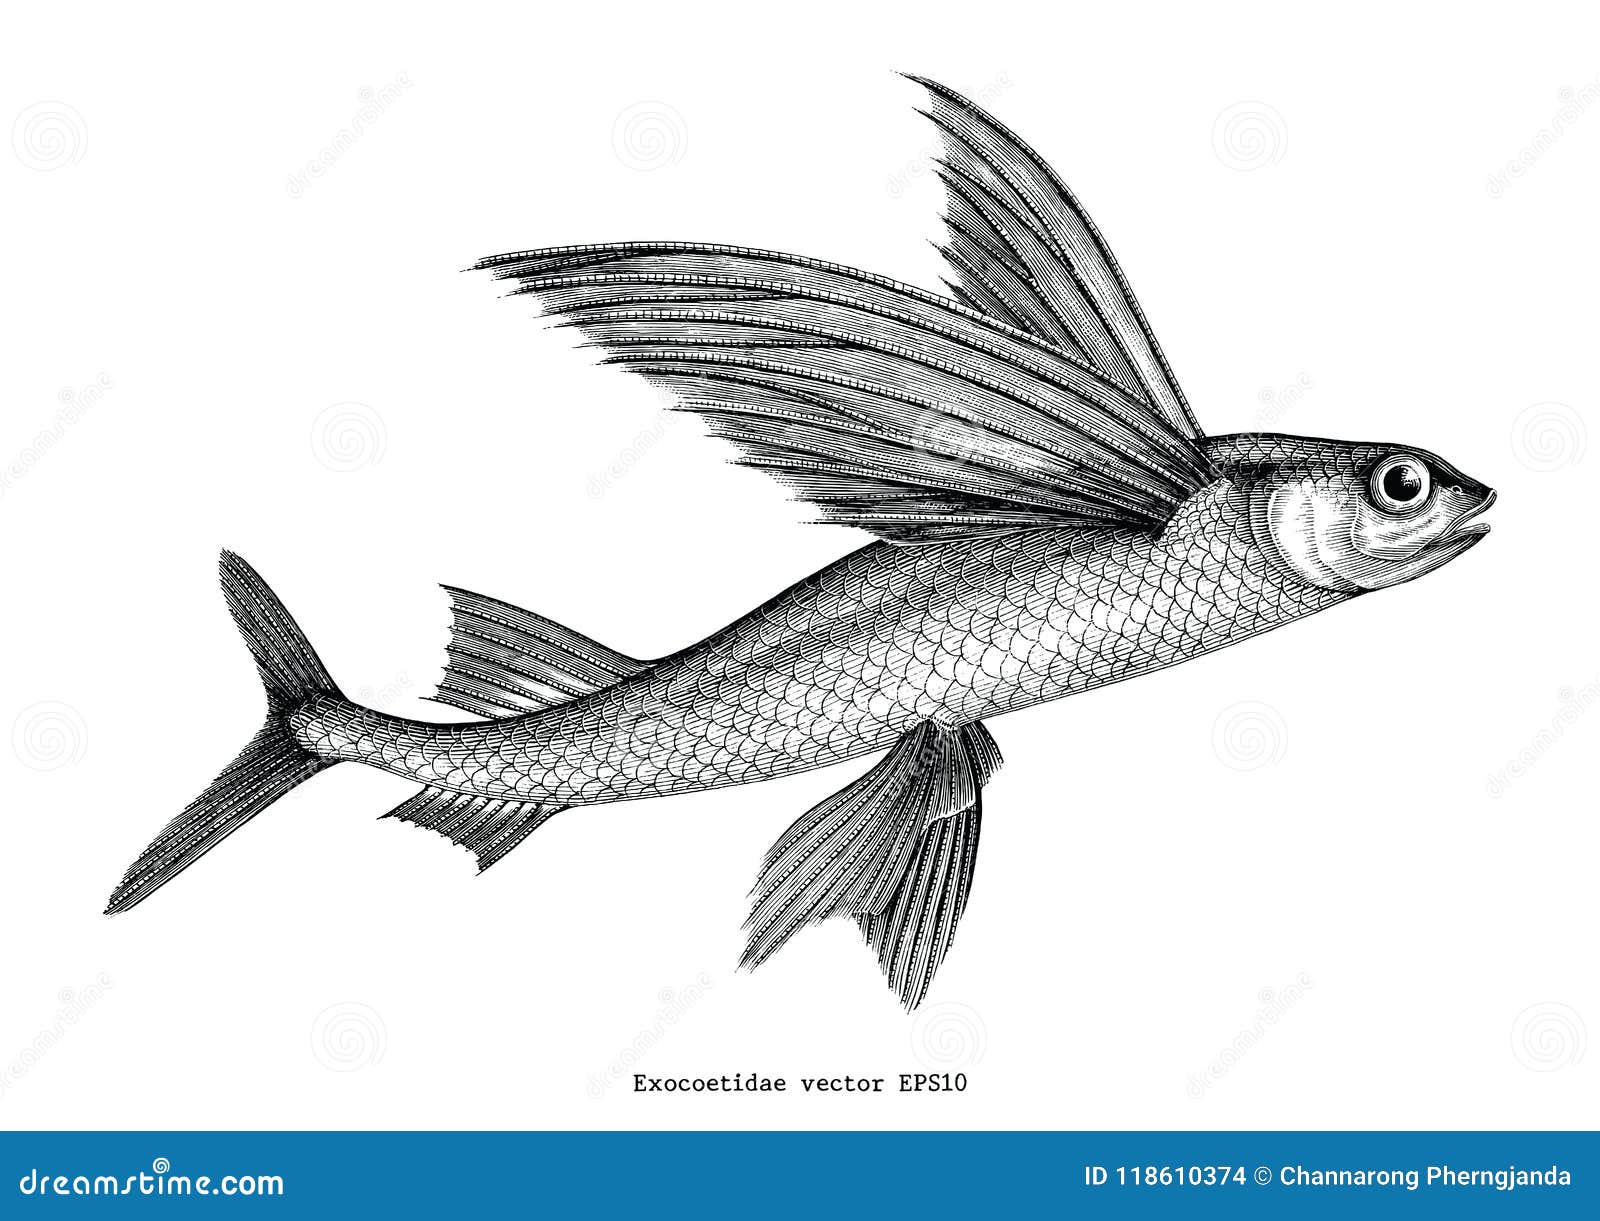 https://thumbs.dreamstime.com/z/exocoetidae-flying-fish-hand-drawing-vintage-engraving-illust-exocoetidae-flying-fish-hand-drawing-vintage-engraving-118610374.jpg